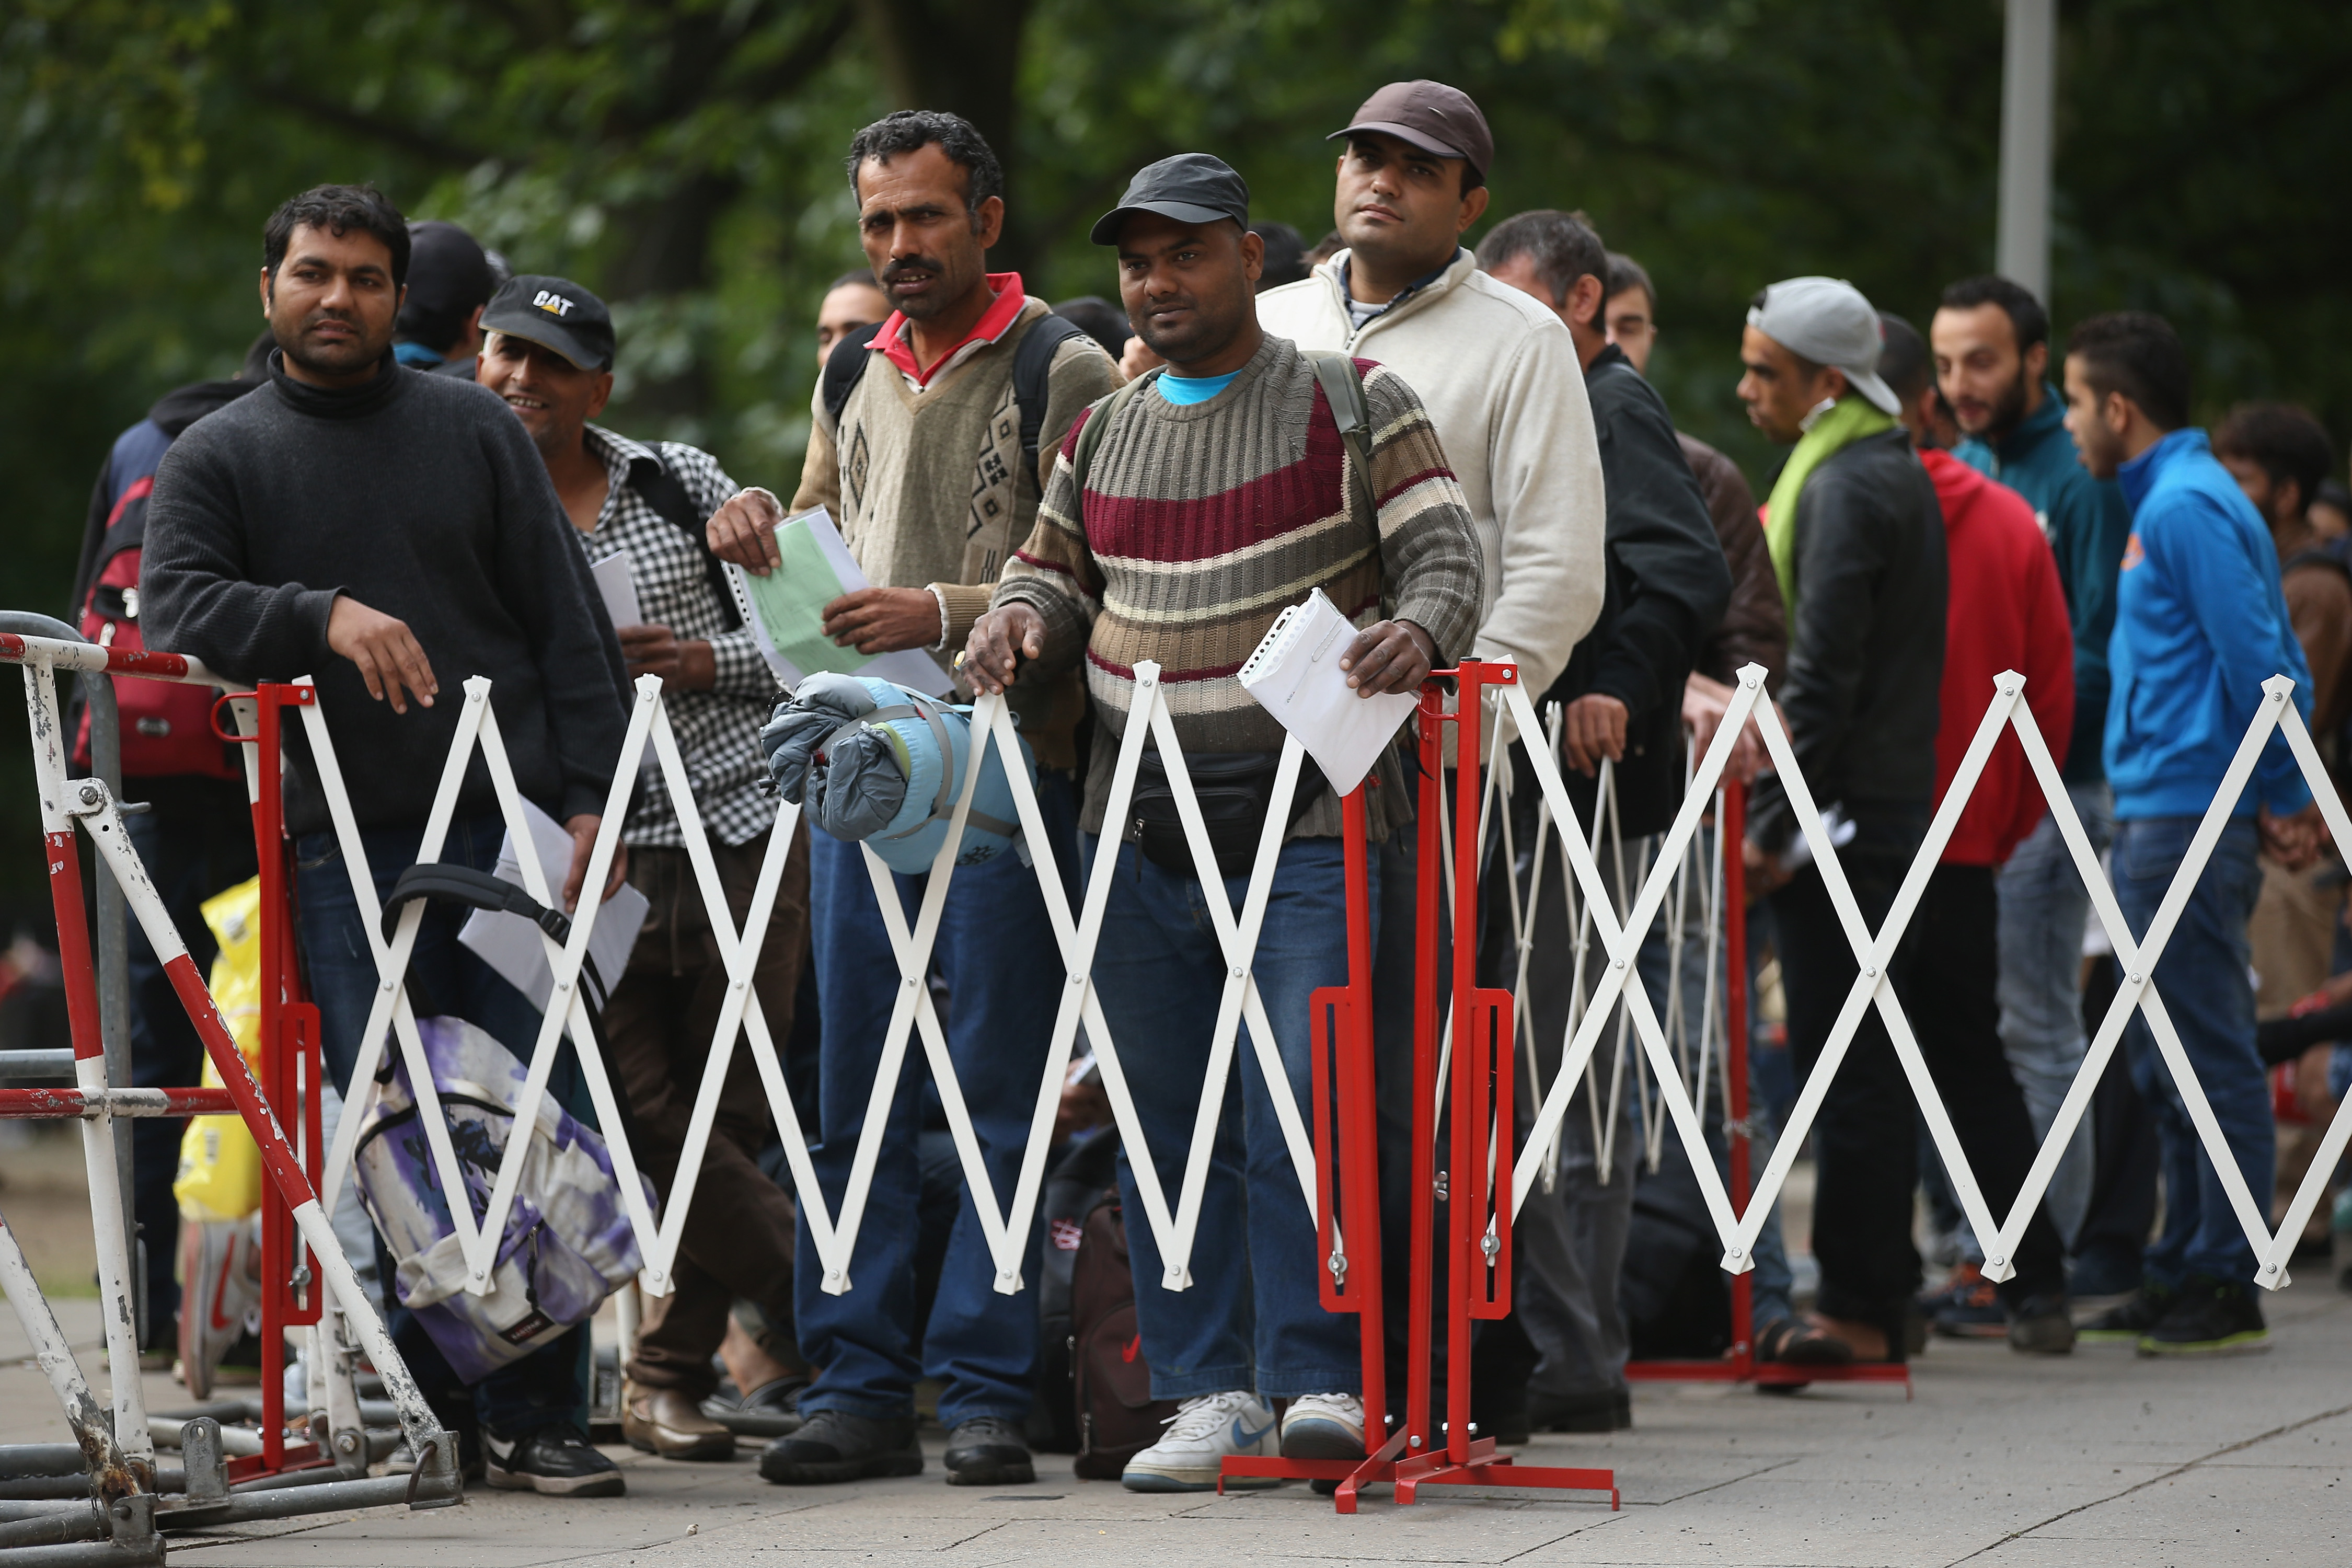 Finanzexperte zu Merkels Asylkrise: Wer zahlt für den größten Fehler der vergangenen Jahrzehnte?